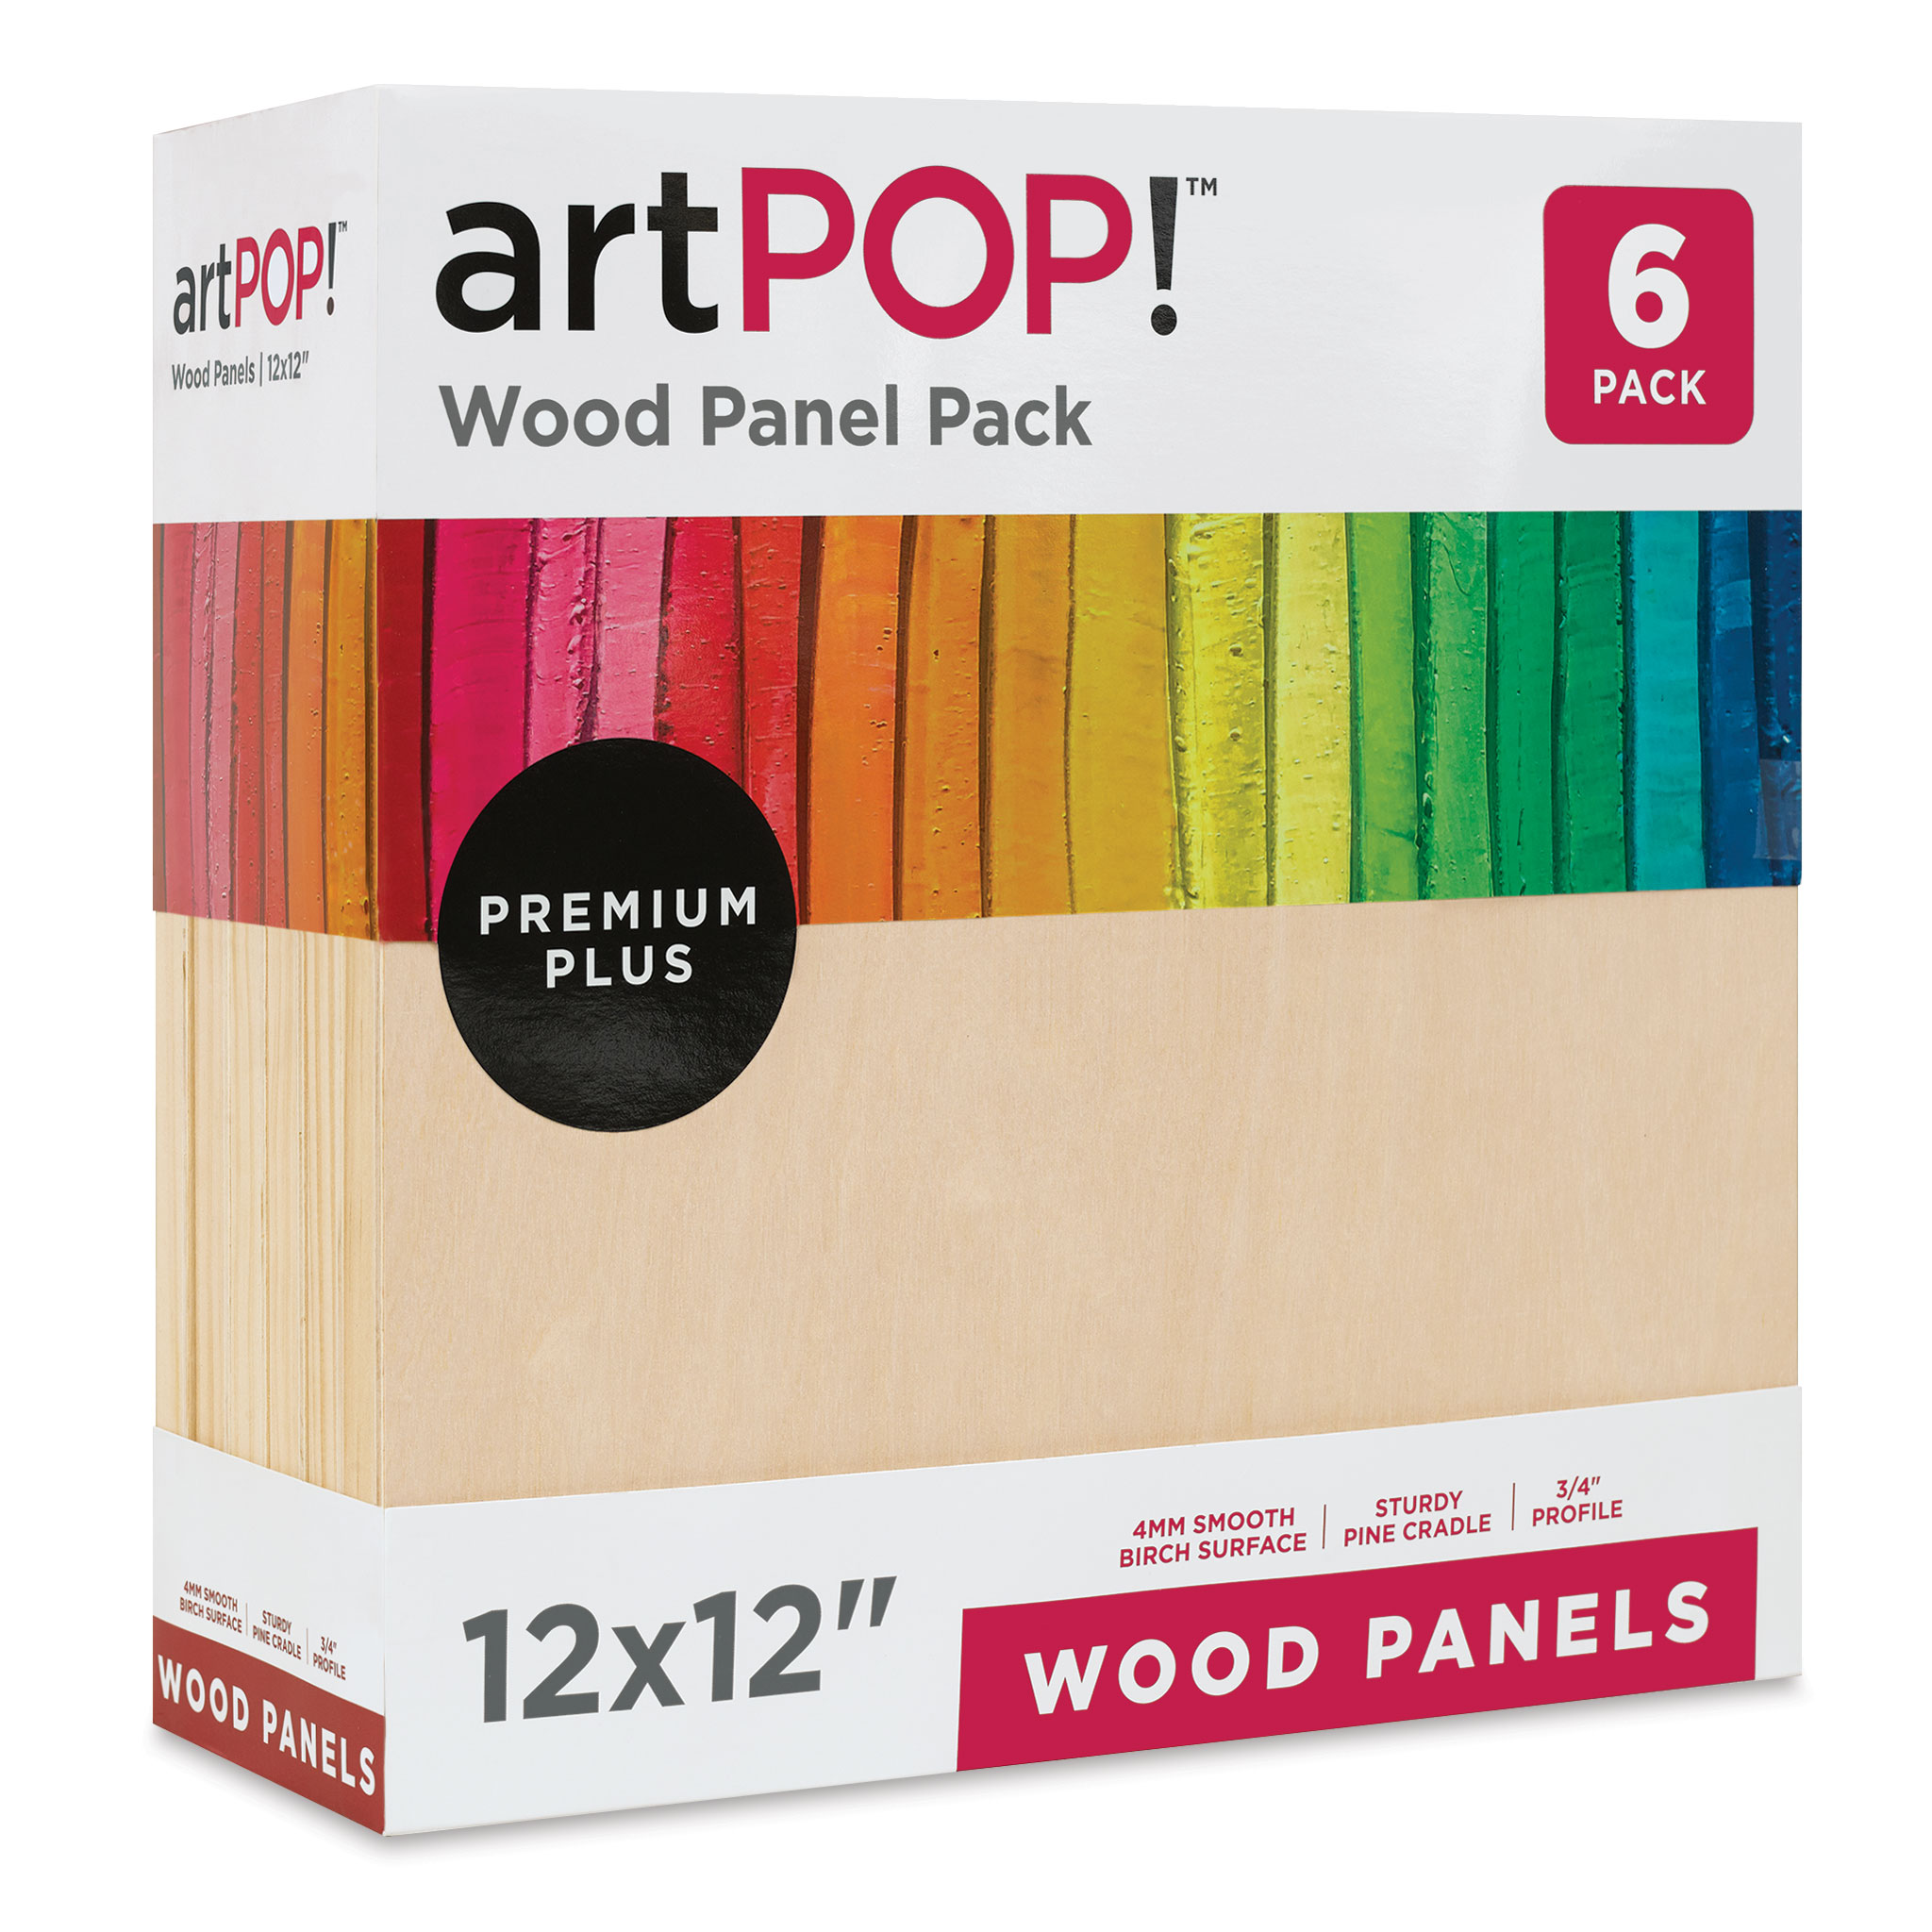 artPOP! Wood Panel Packs